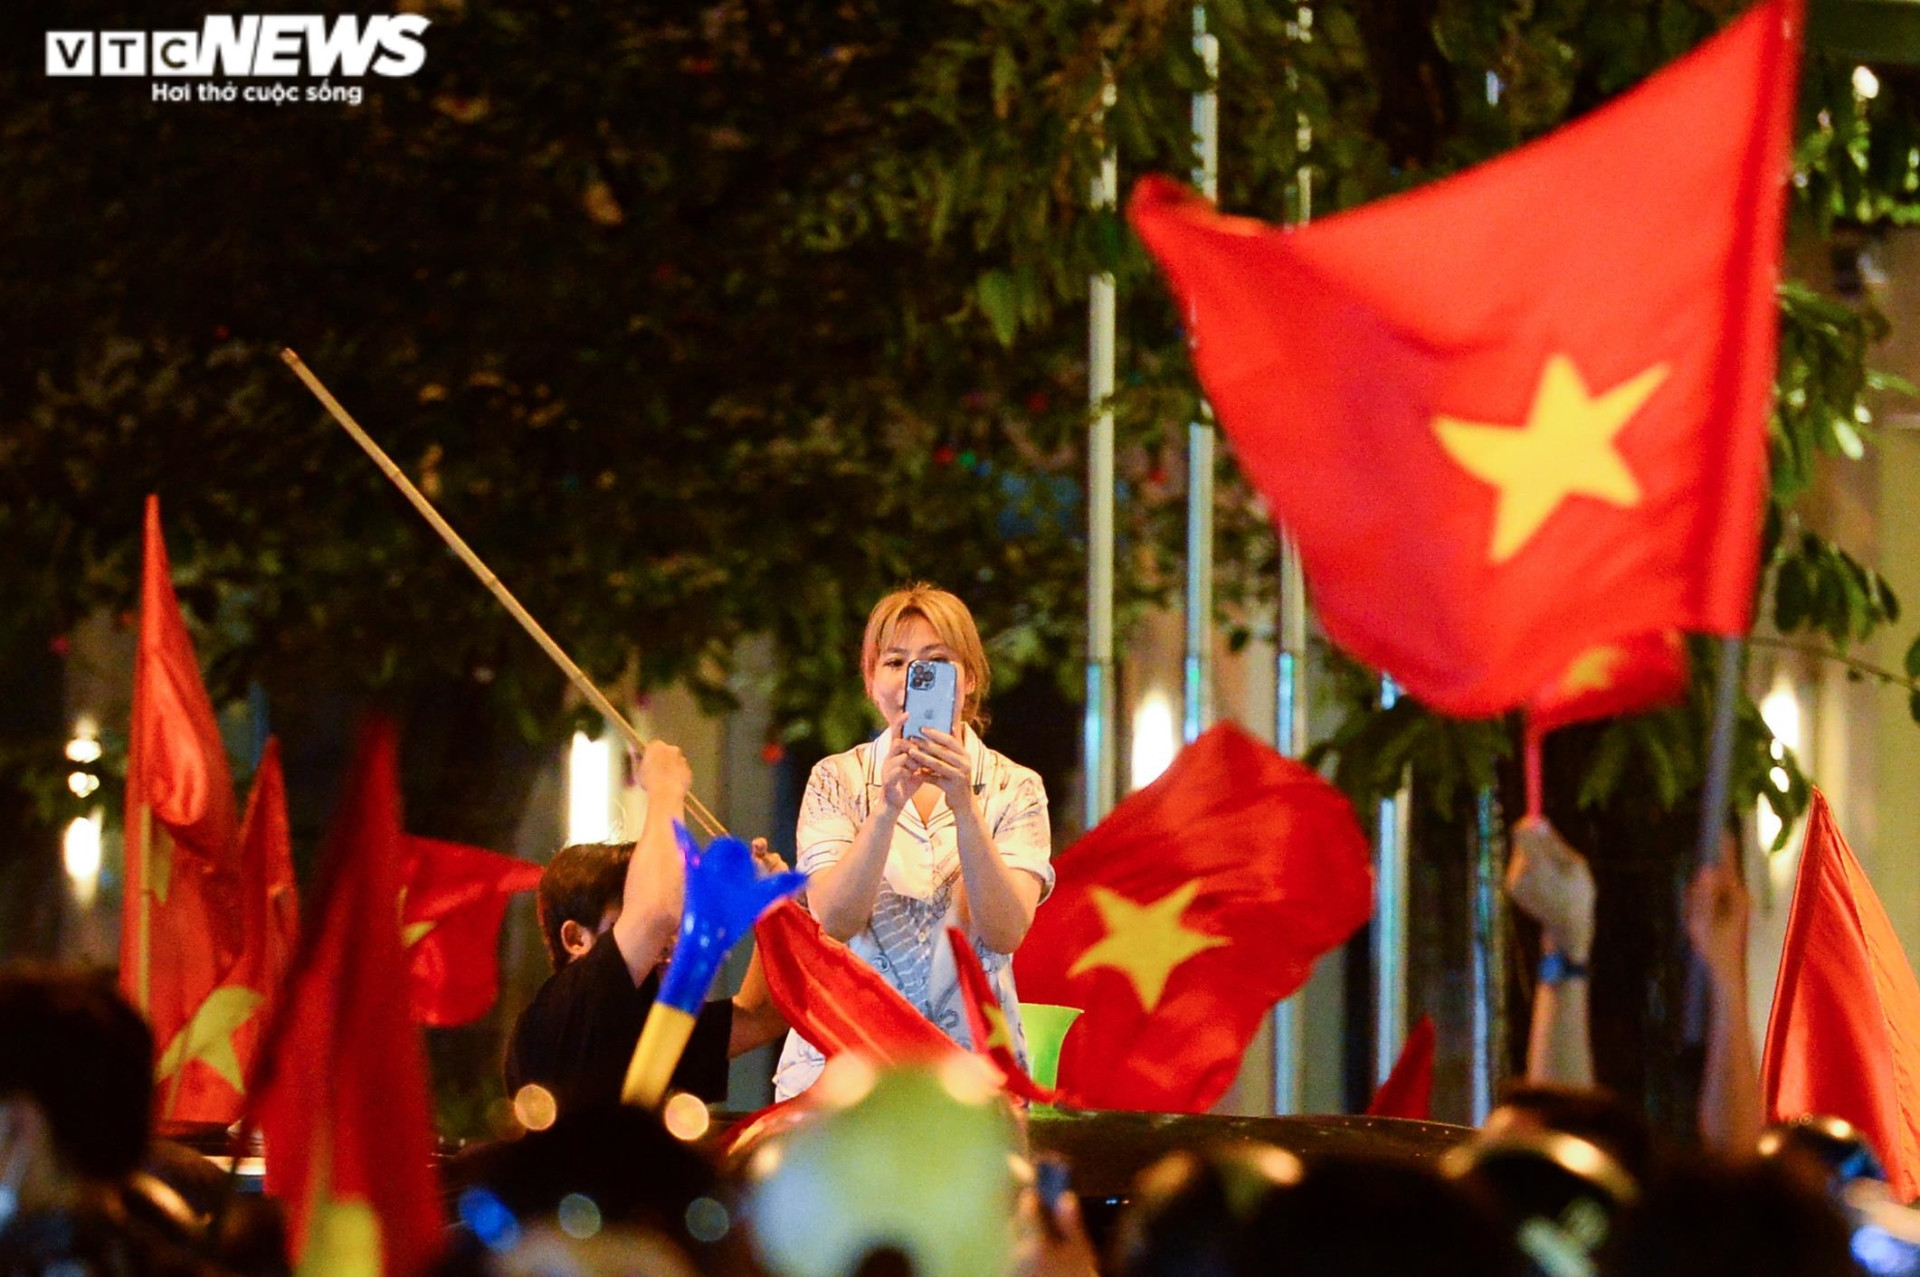 Nửa đêm, CĐV nhí vẫn theo bố mẹ xuống đường mừng U23 Việt Nam vô địch - 13